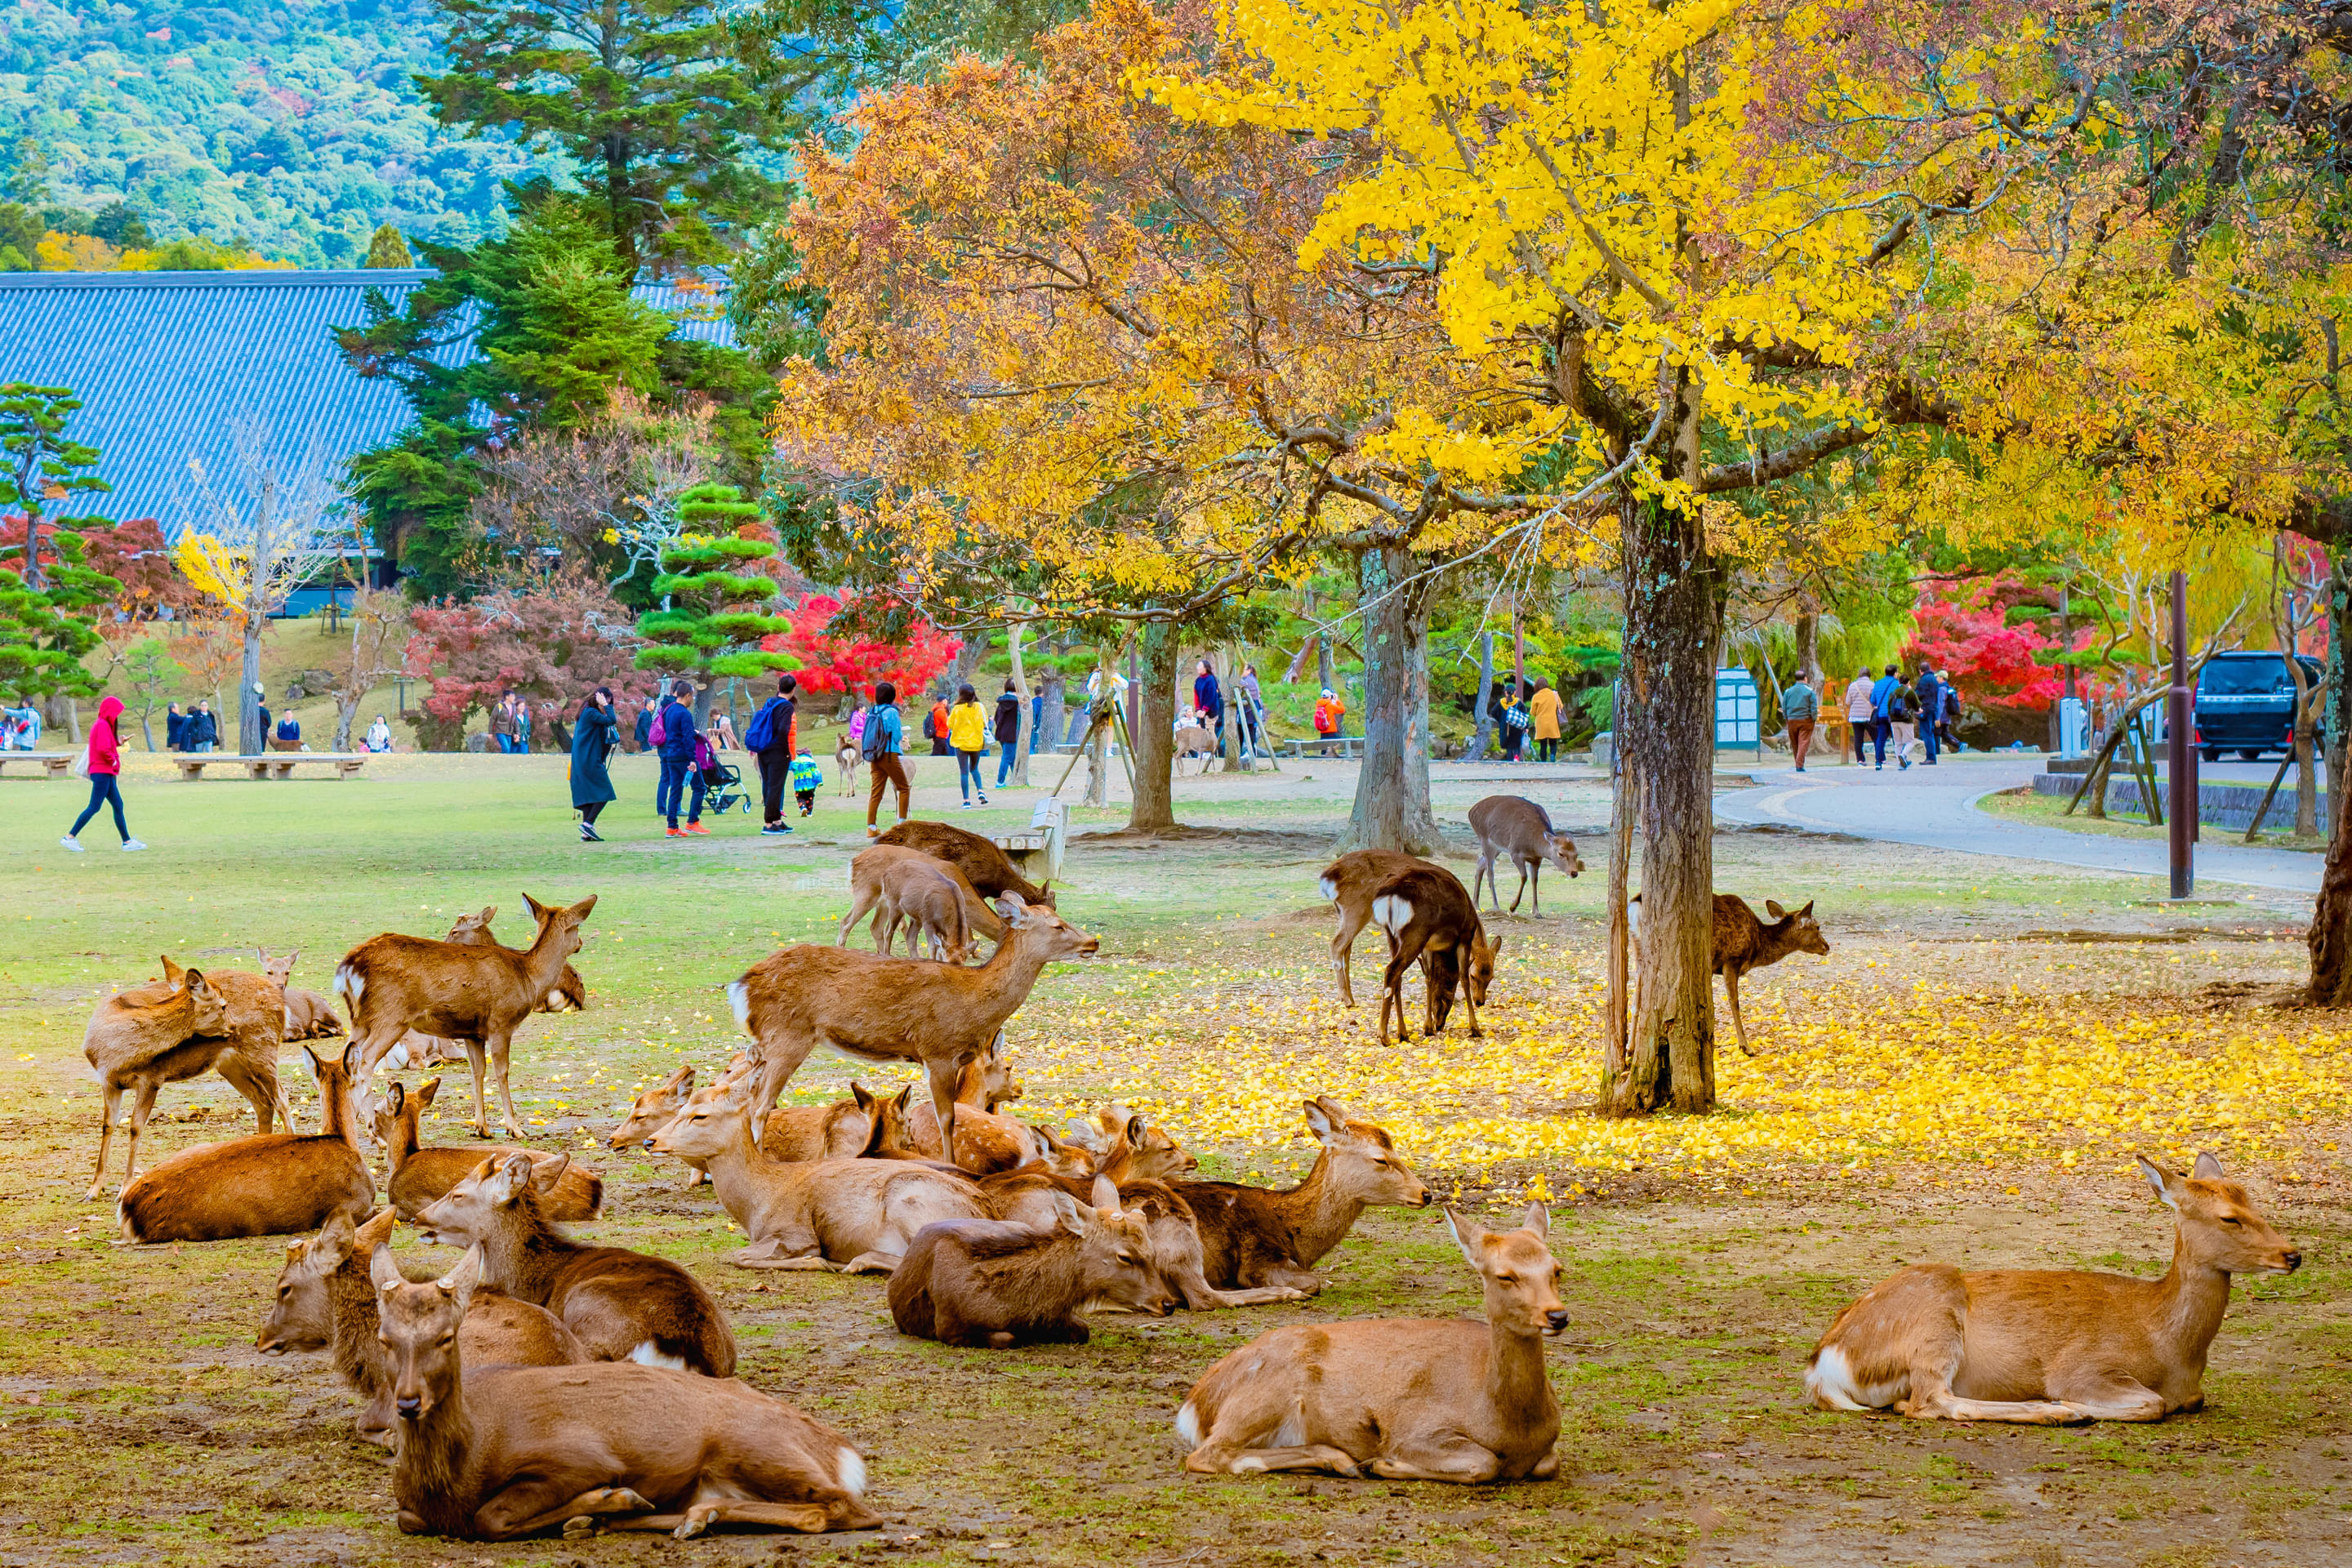 Nara Park Overview